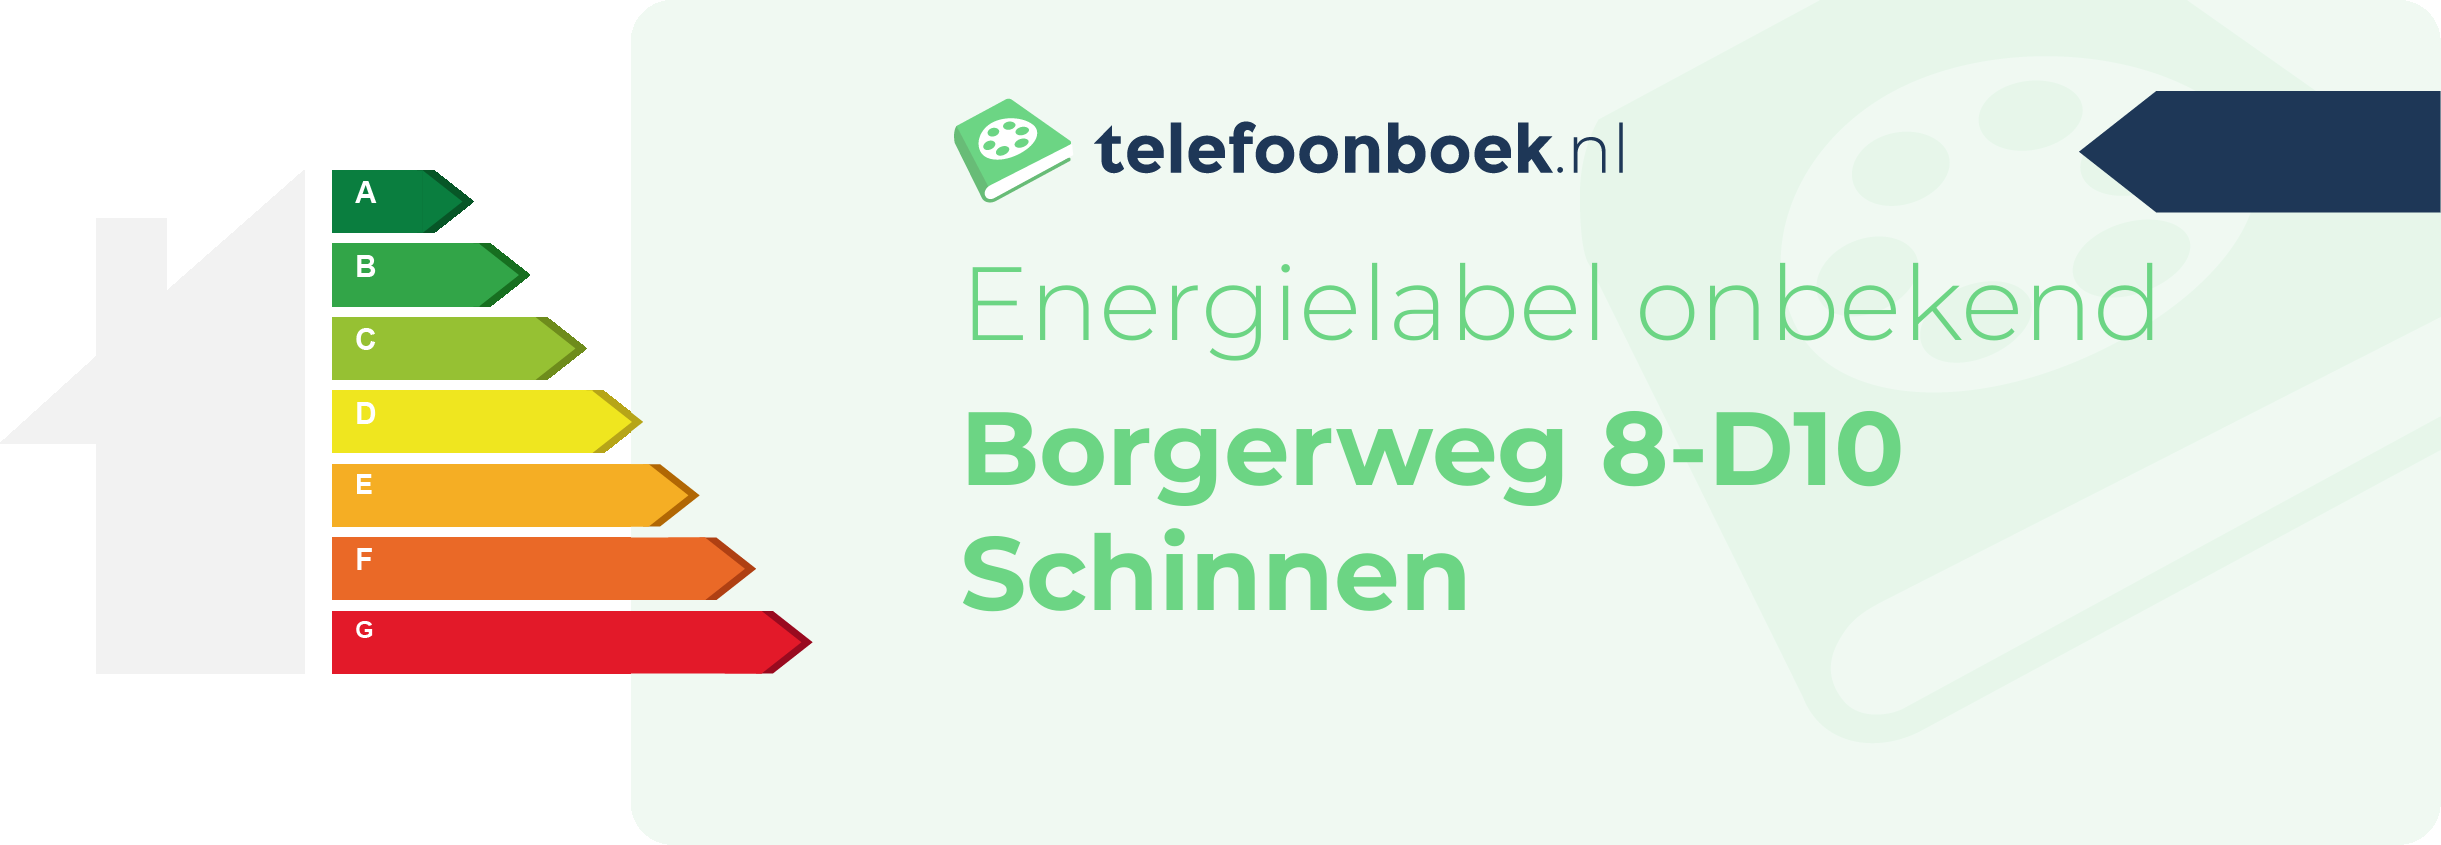 Energielabel Borgerweg 8-D10 Schinnen